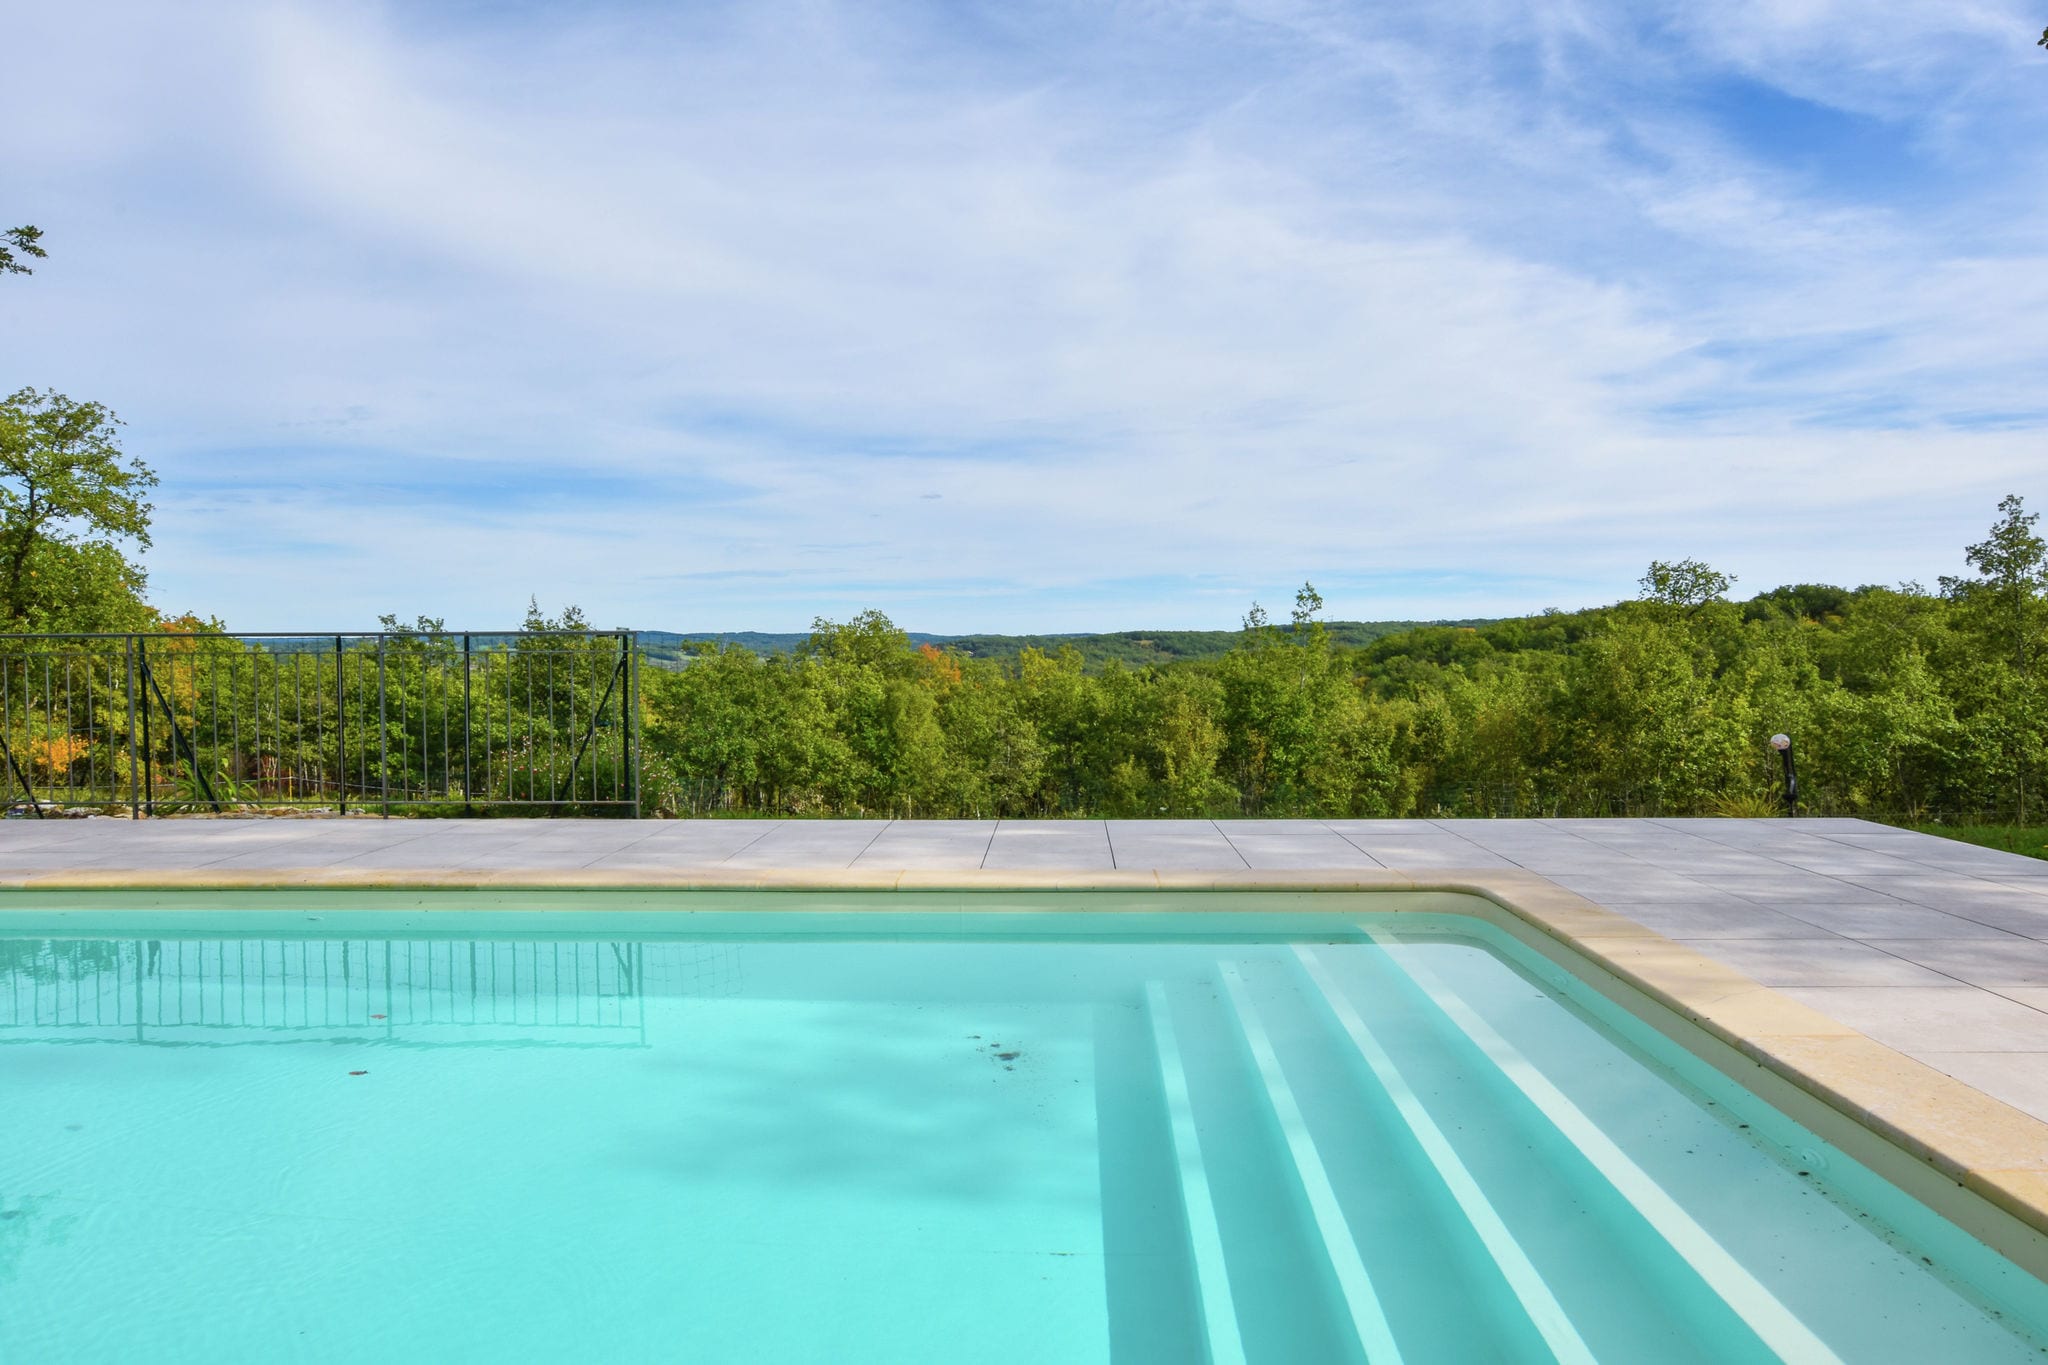 Maison de vacances idyllique près de Cazals avec piscine